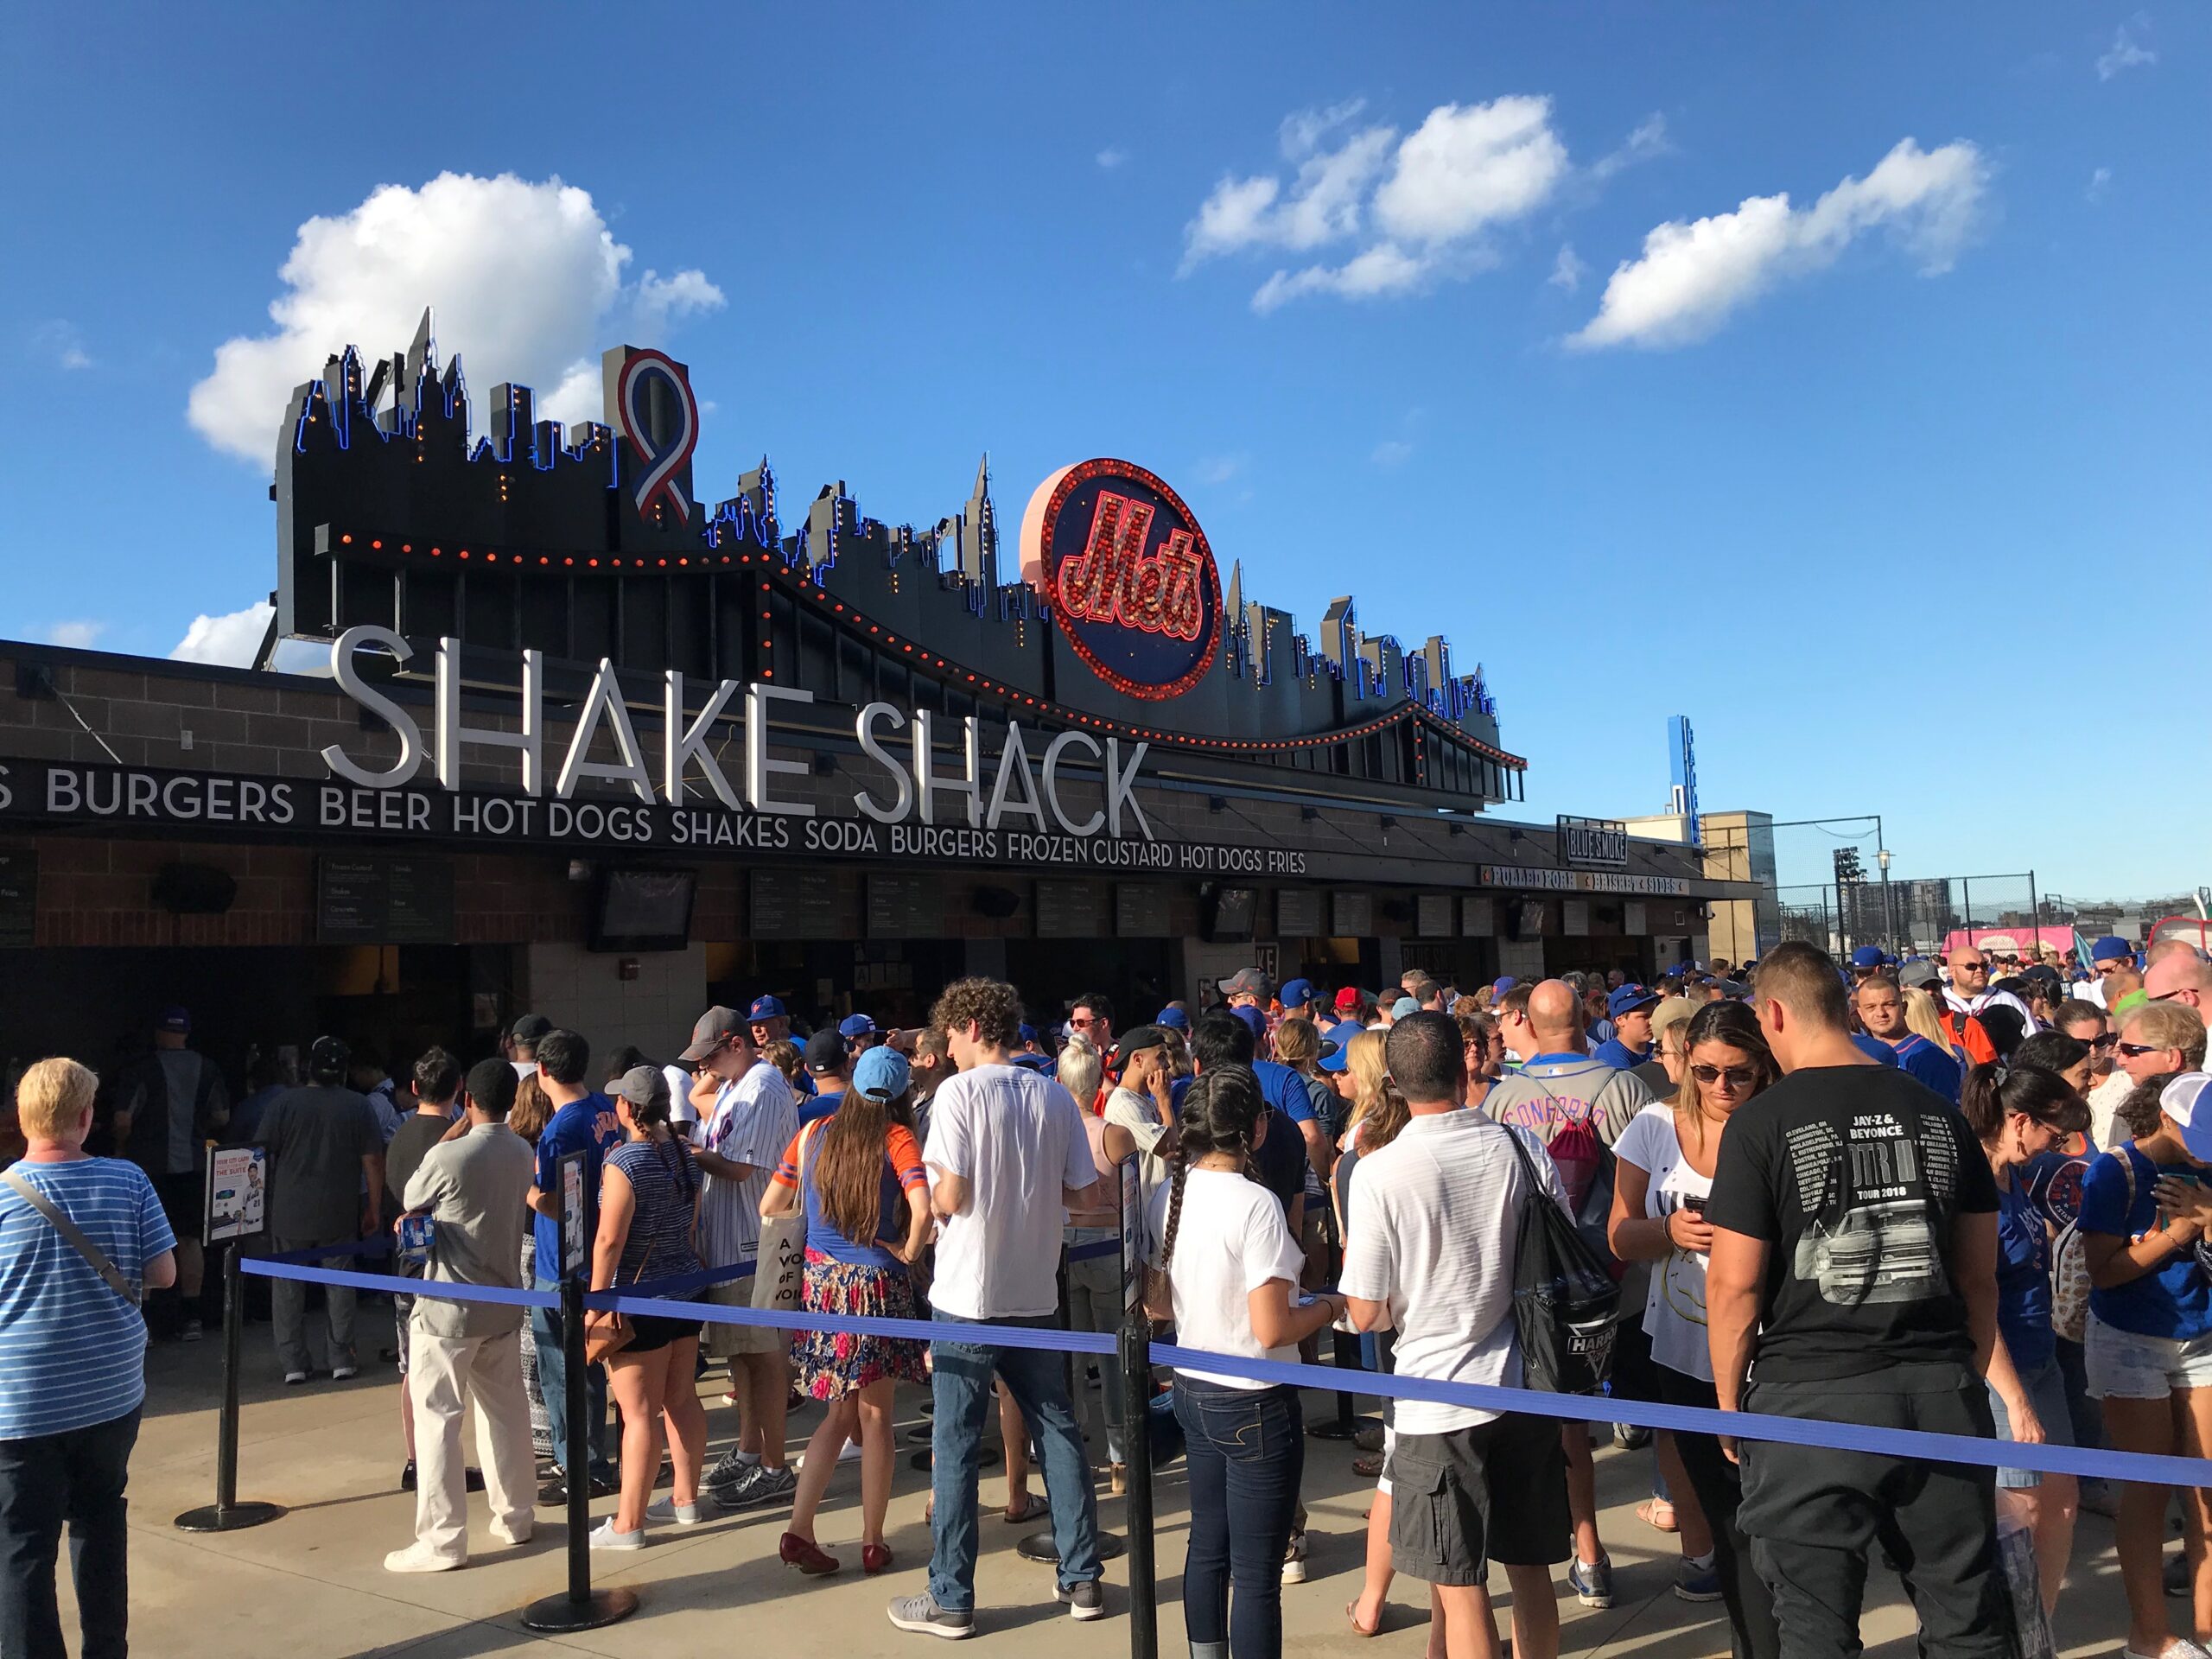 For 10 years, beer, snack vendor keeps Las Vegas baseball crowds